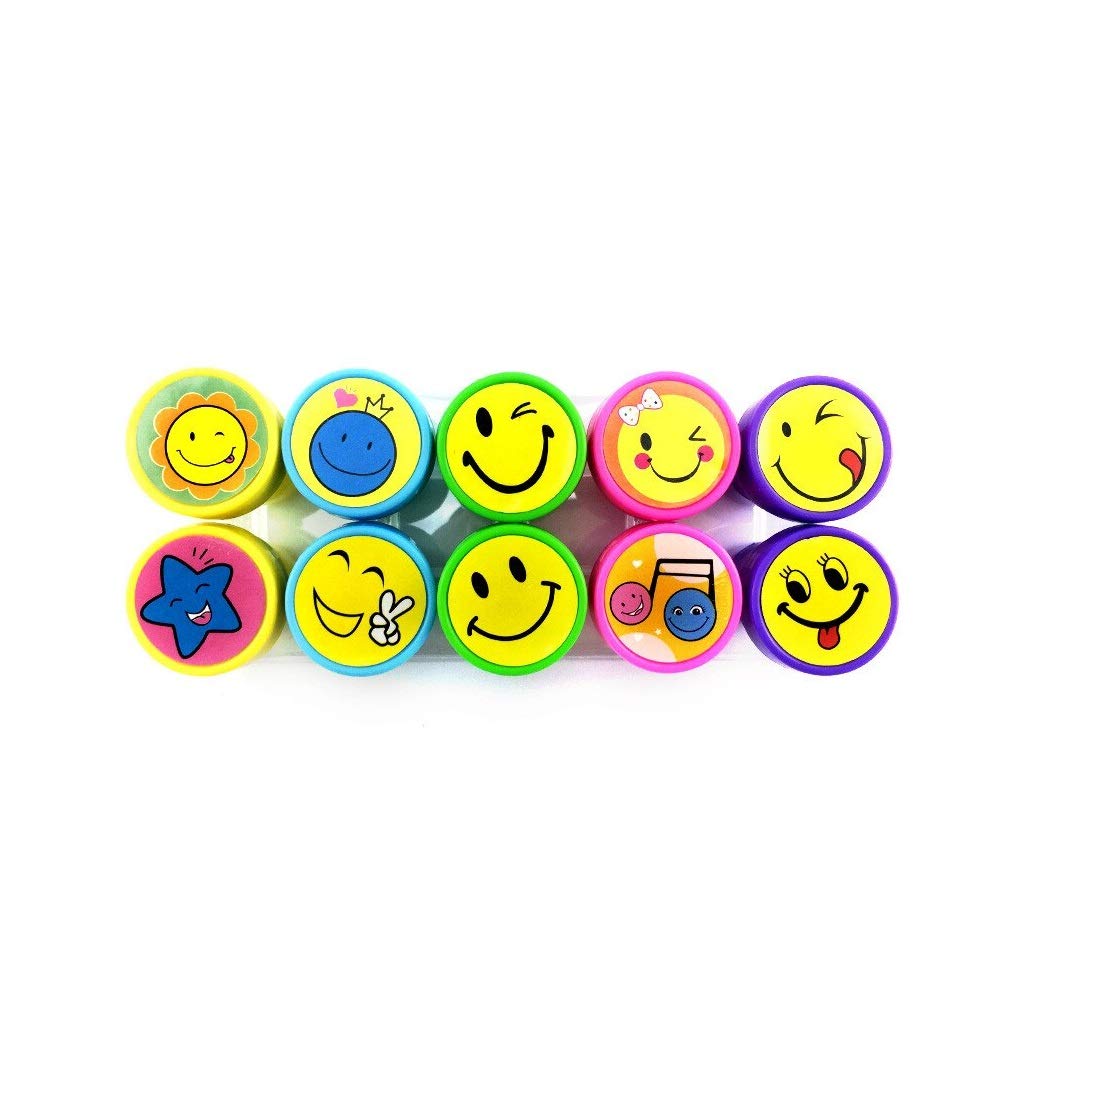 Puffy-Sticker, Emotion, Smileys, 10 x 15 cm, Verschiedene Motive, Sticker, Bastelbedarf